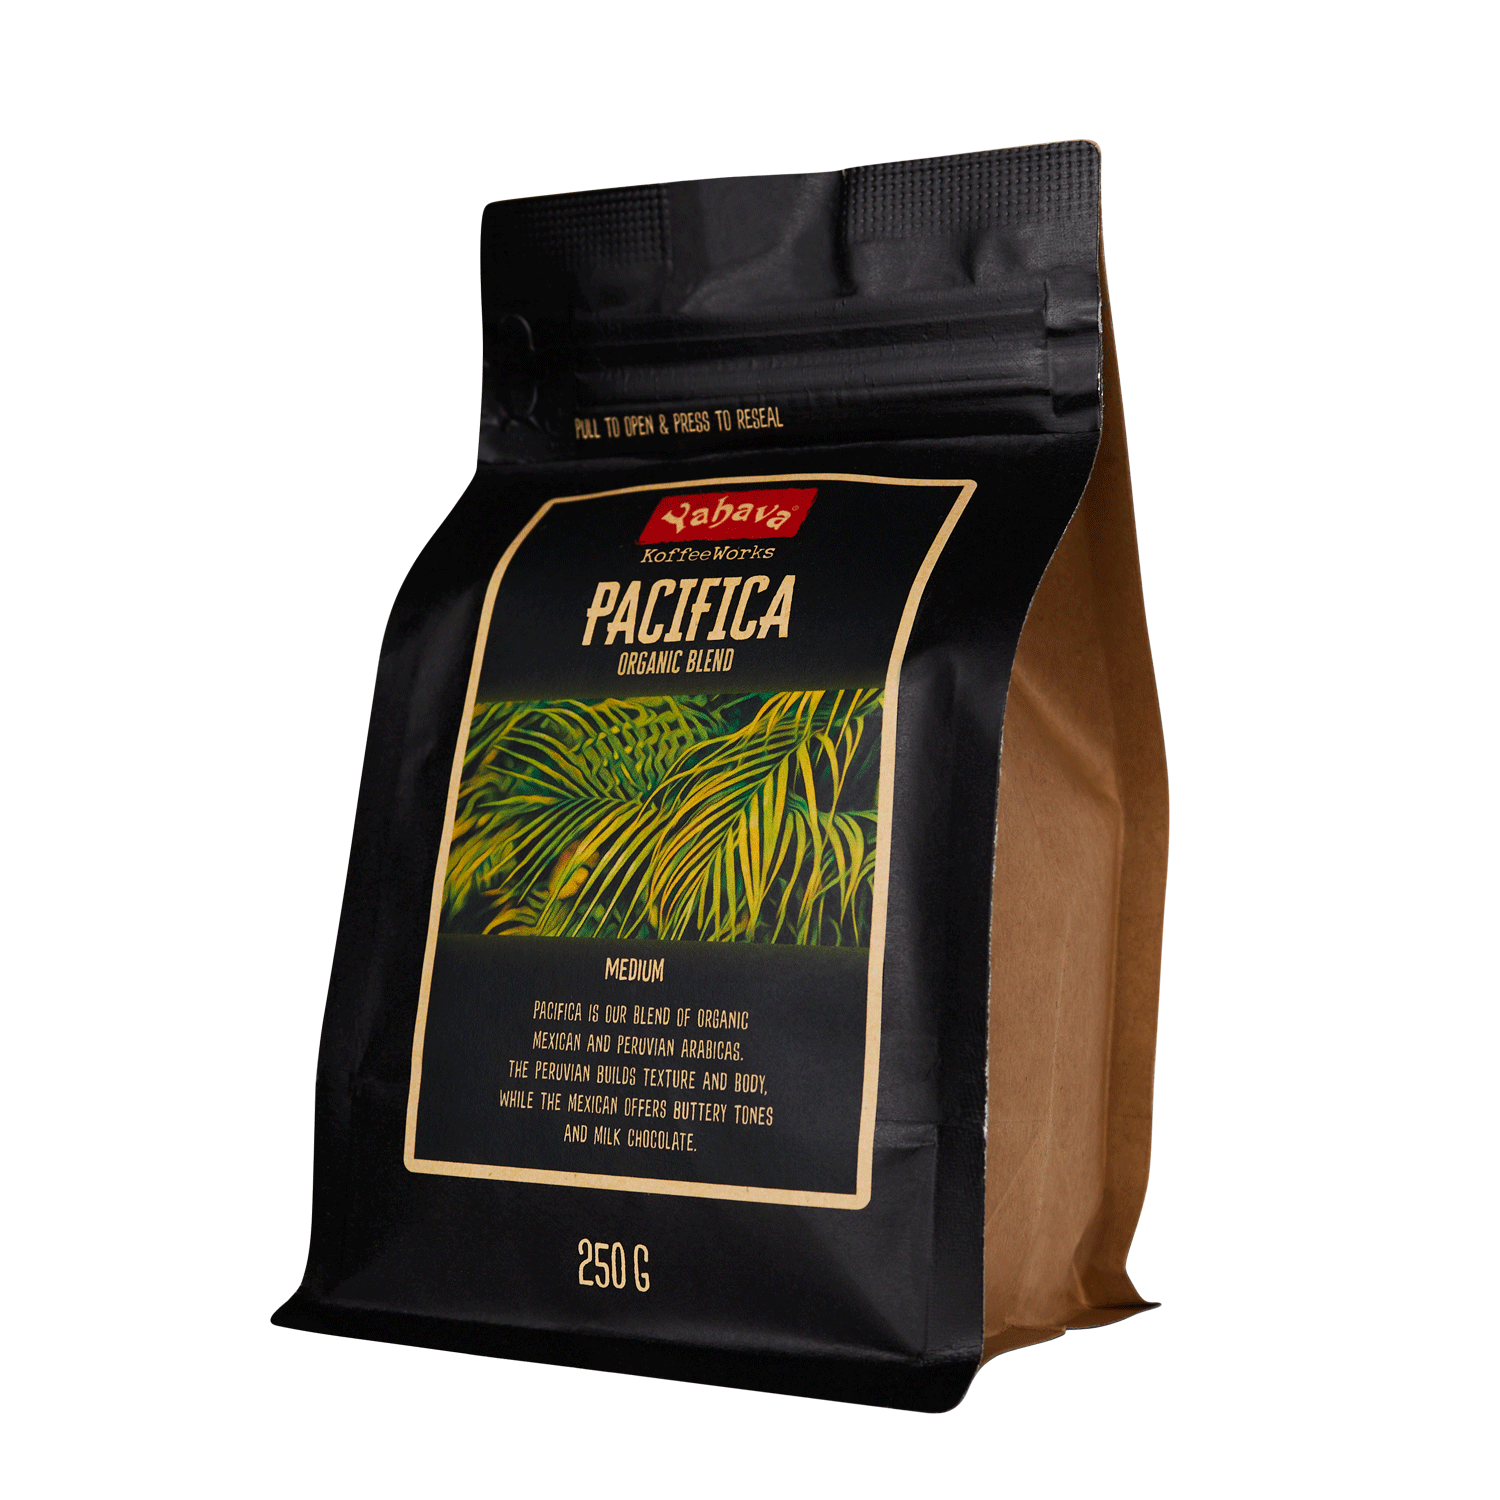 Pacificia Organic Coffee - Signature Range